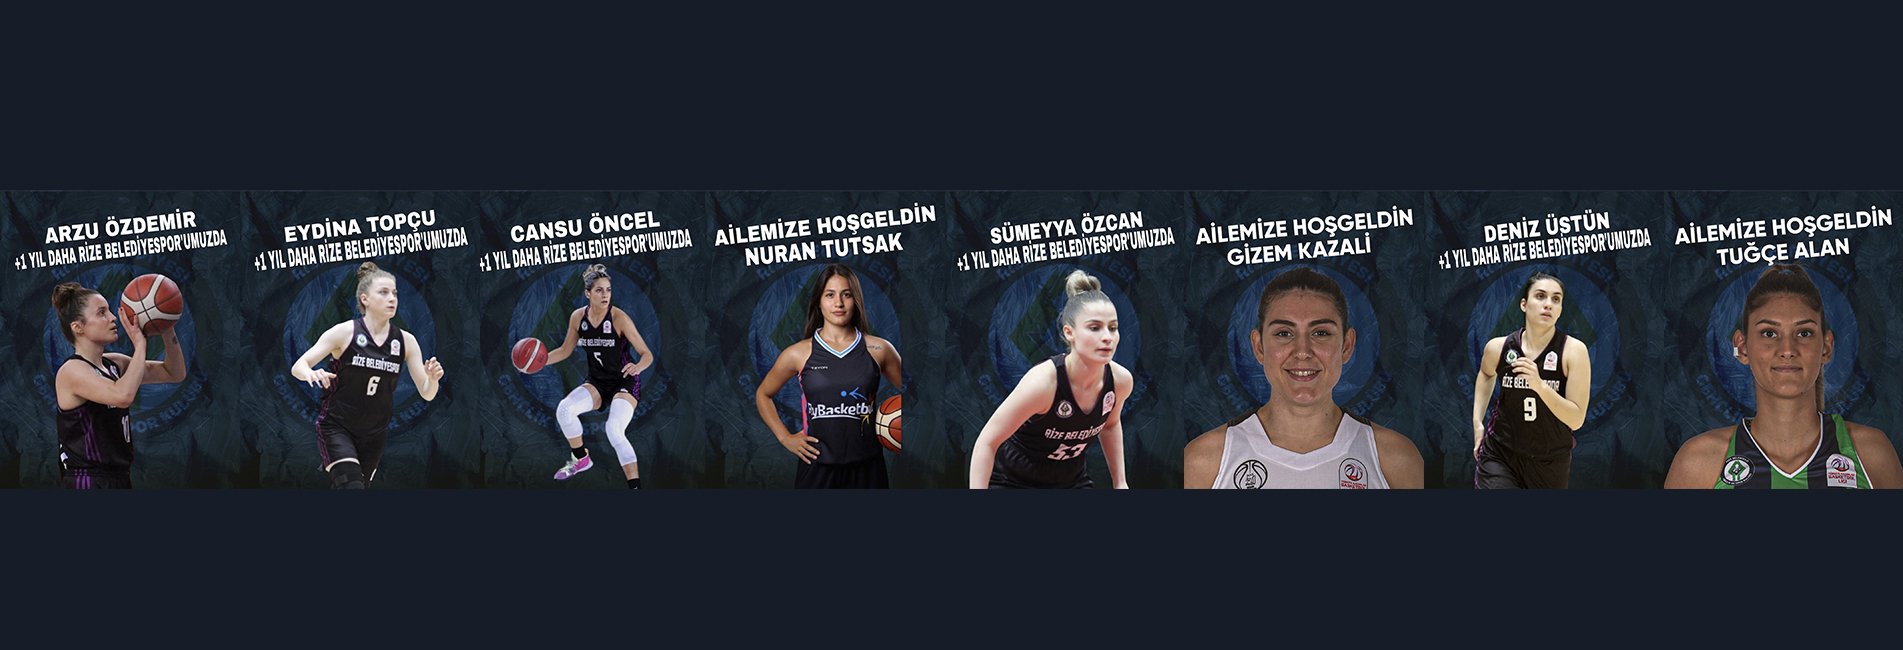 Rize Belediyespor Kadın Basketbol Takımı, 6 Oyuncuyla Anlaşma Sağladı